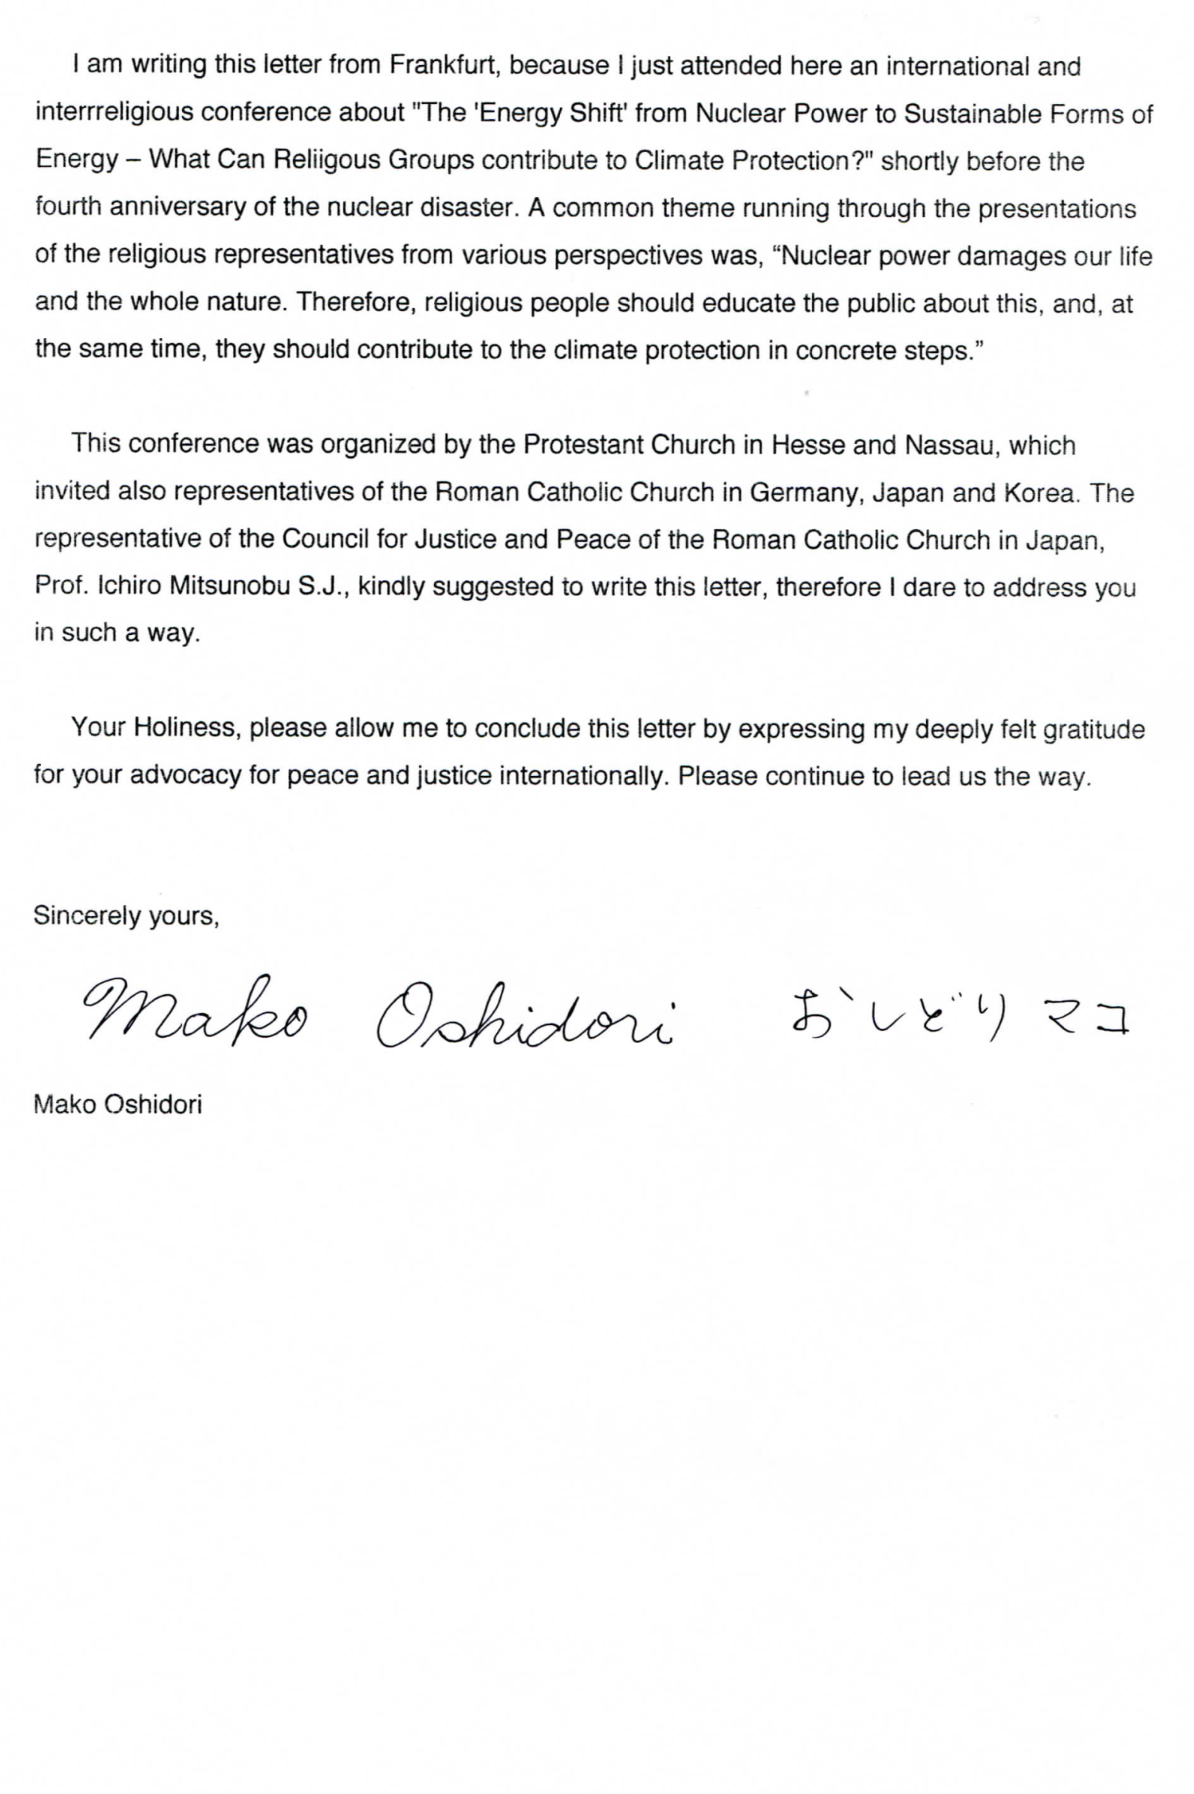 原発事故についてのローマ教皇からの手紙 取材 OSHIDORI Mako&Ken Portal / おしどり